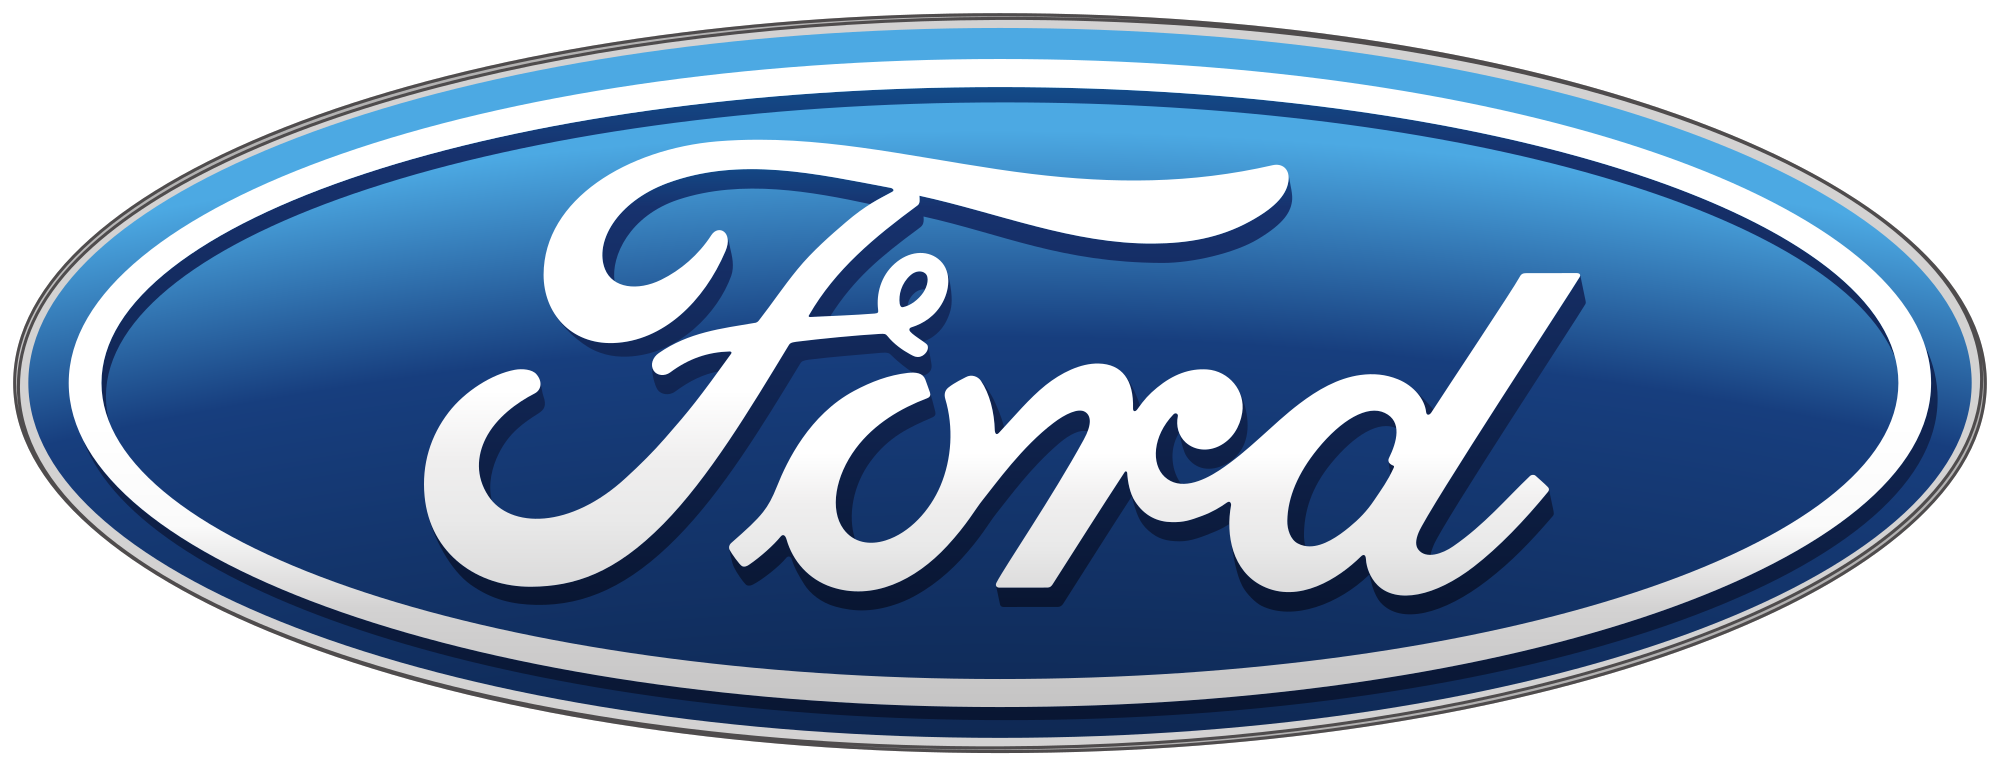 Fordovi automobili u Srbiji i Evropi apsolutno bezbedni